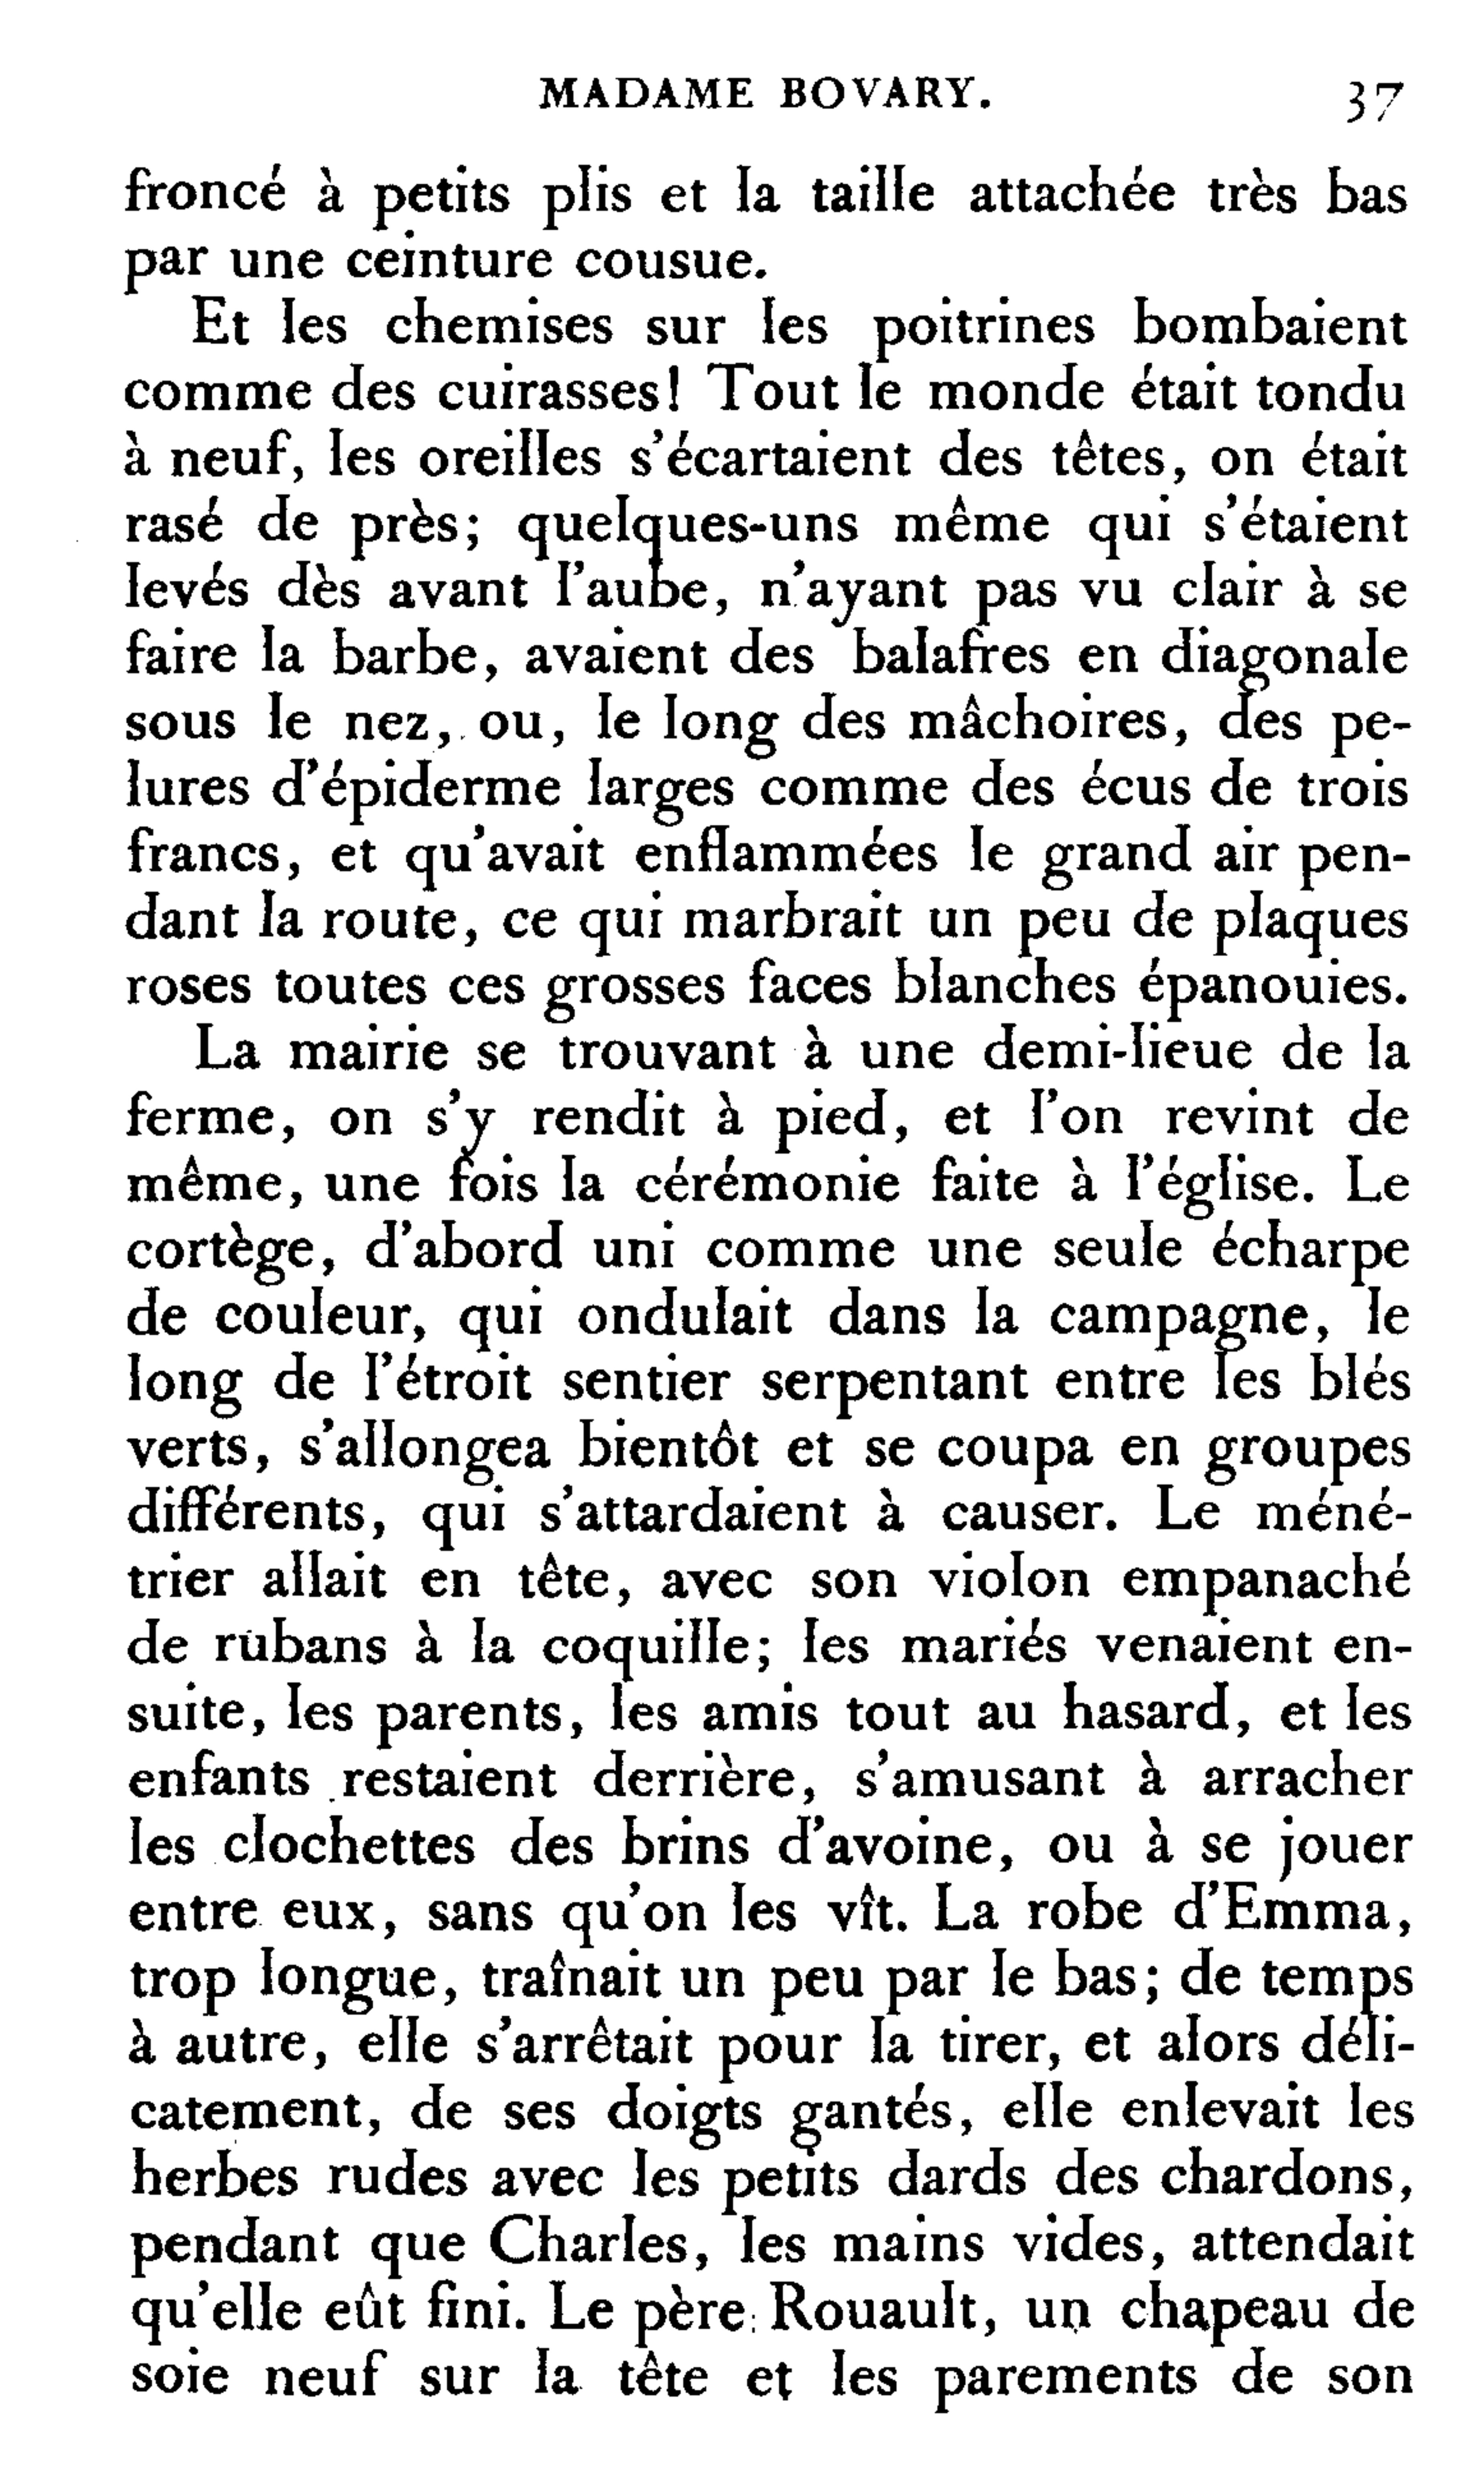 Notice Sur Mademoiselle Célestine-joséphine Boguais De La Boissière by  Célestine-Joséphine Boguais de La Bois, Paperback